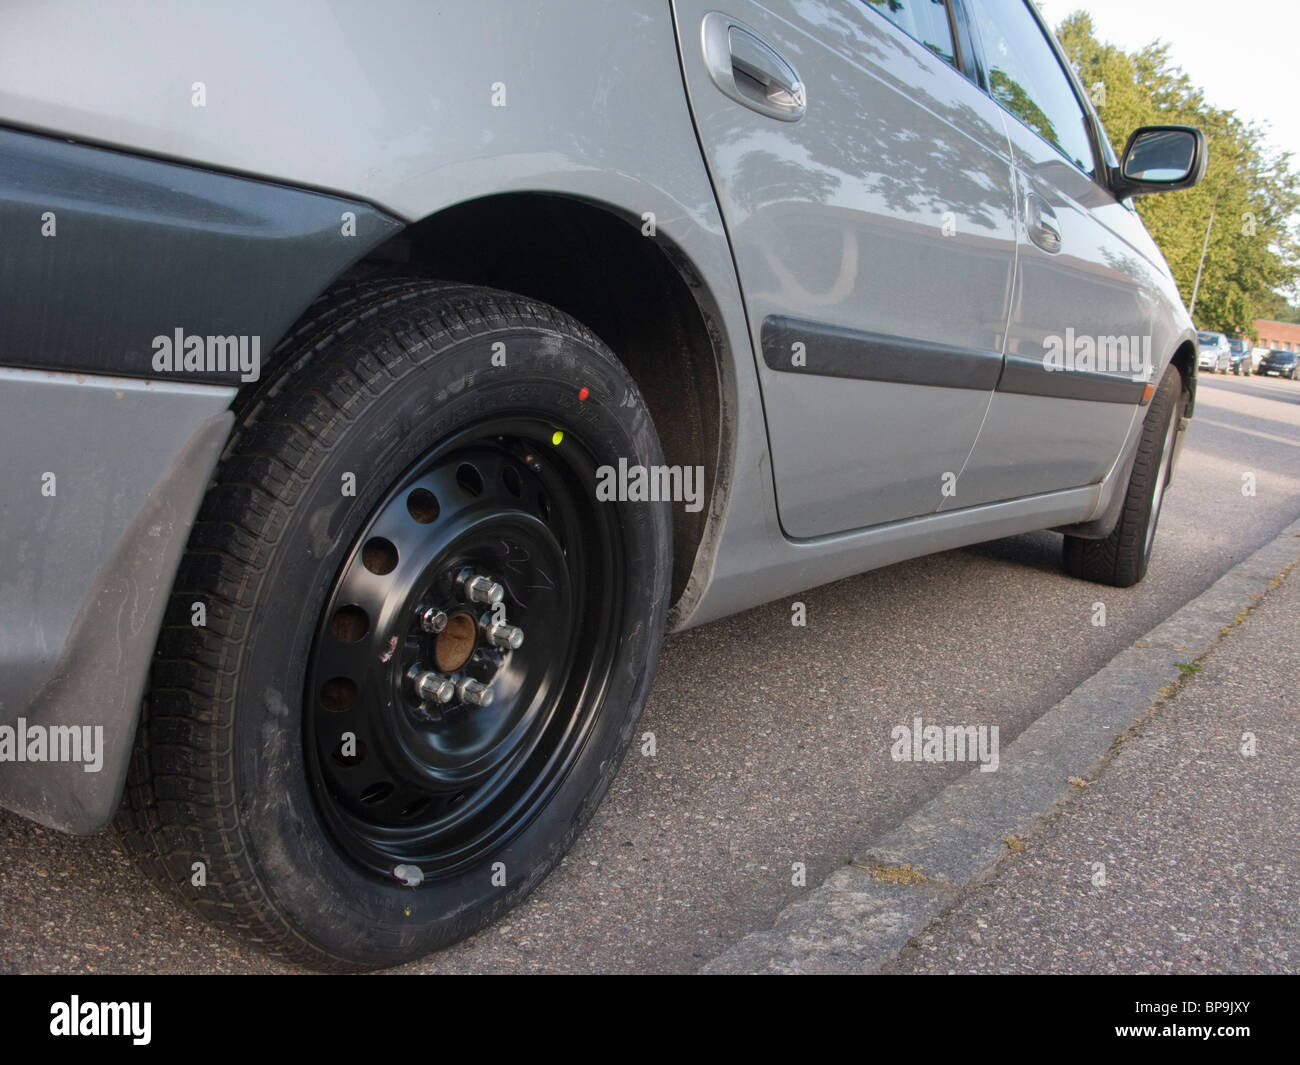 El neumático de repuesto se ha colocado en un coche que ha tenido un pinchazo en la rueda trasera derecha. Foto de stock